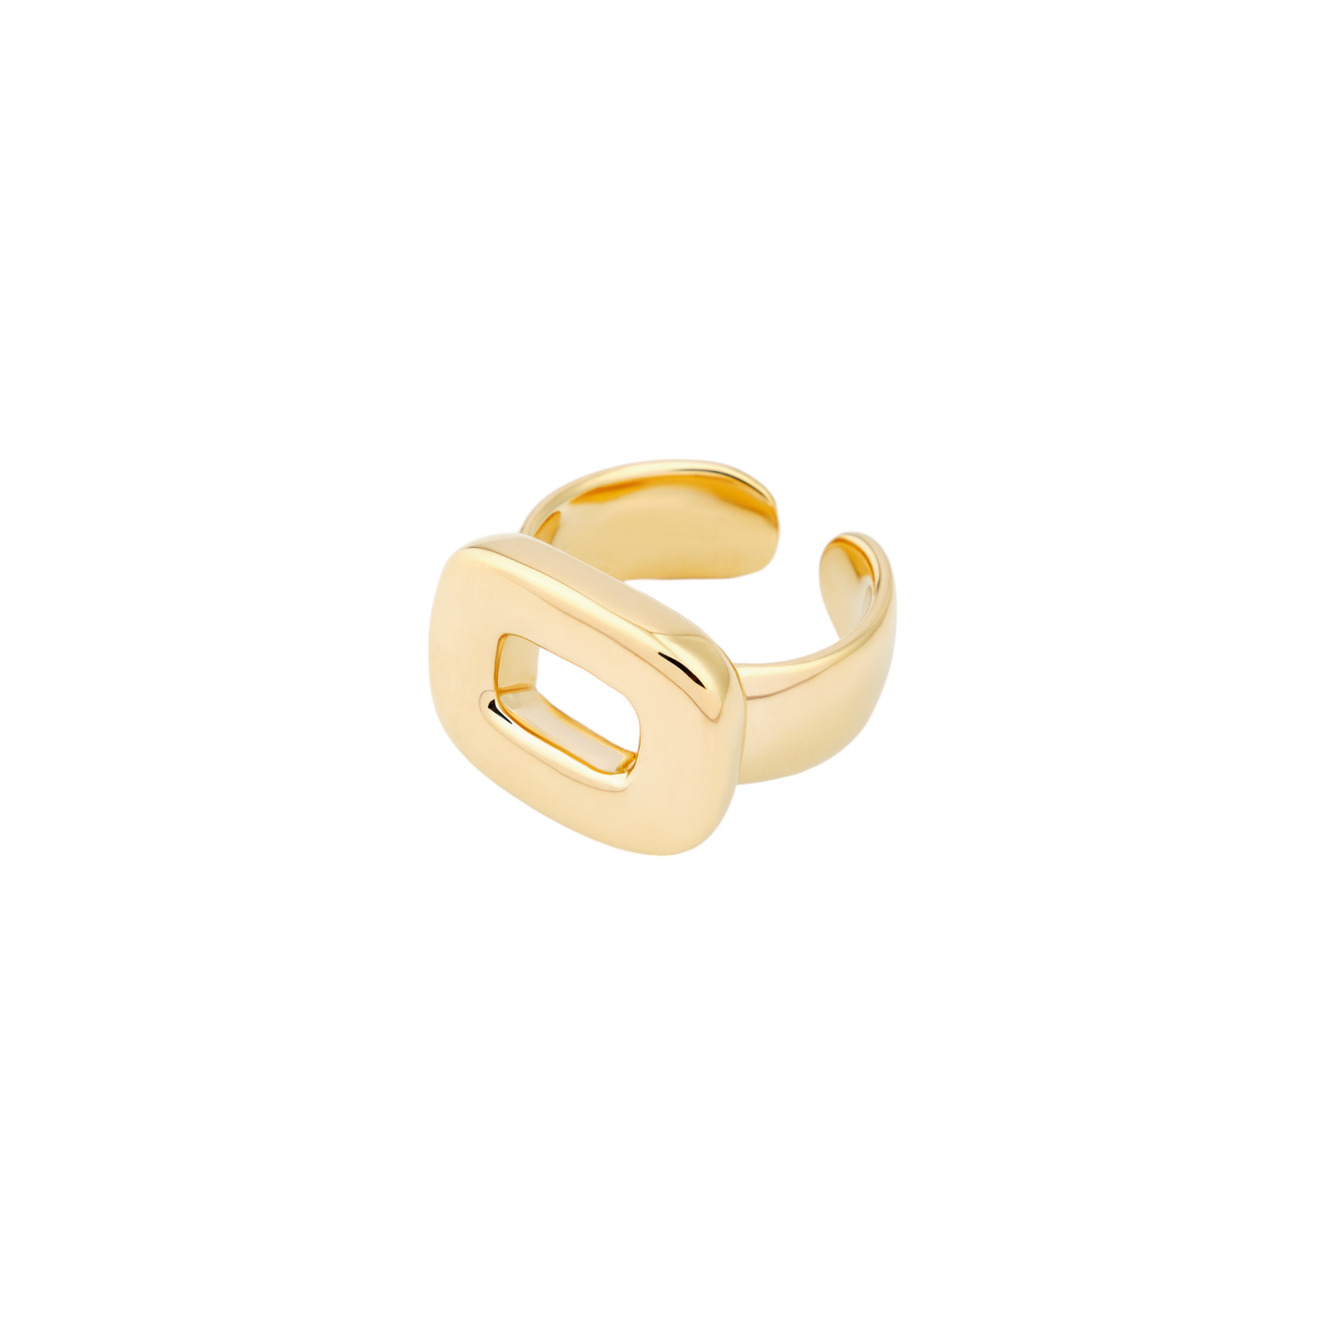 Philippe Audibert Позолоченное кольцо Nicol philippe audibert кольцо nicol с серебряным покрытием